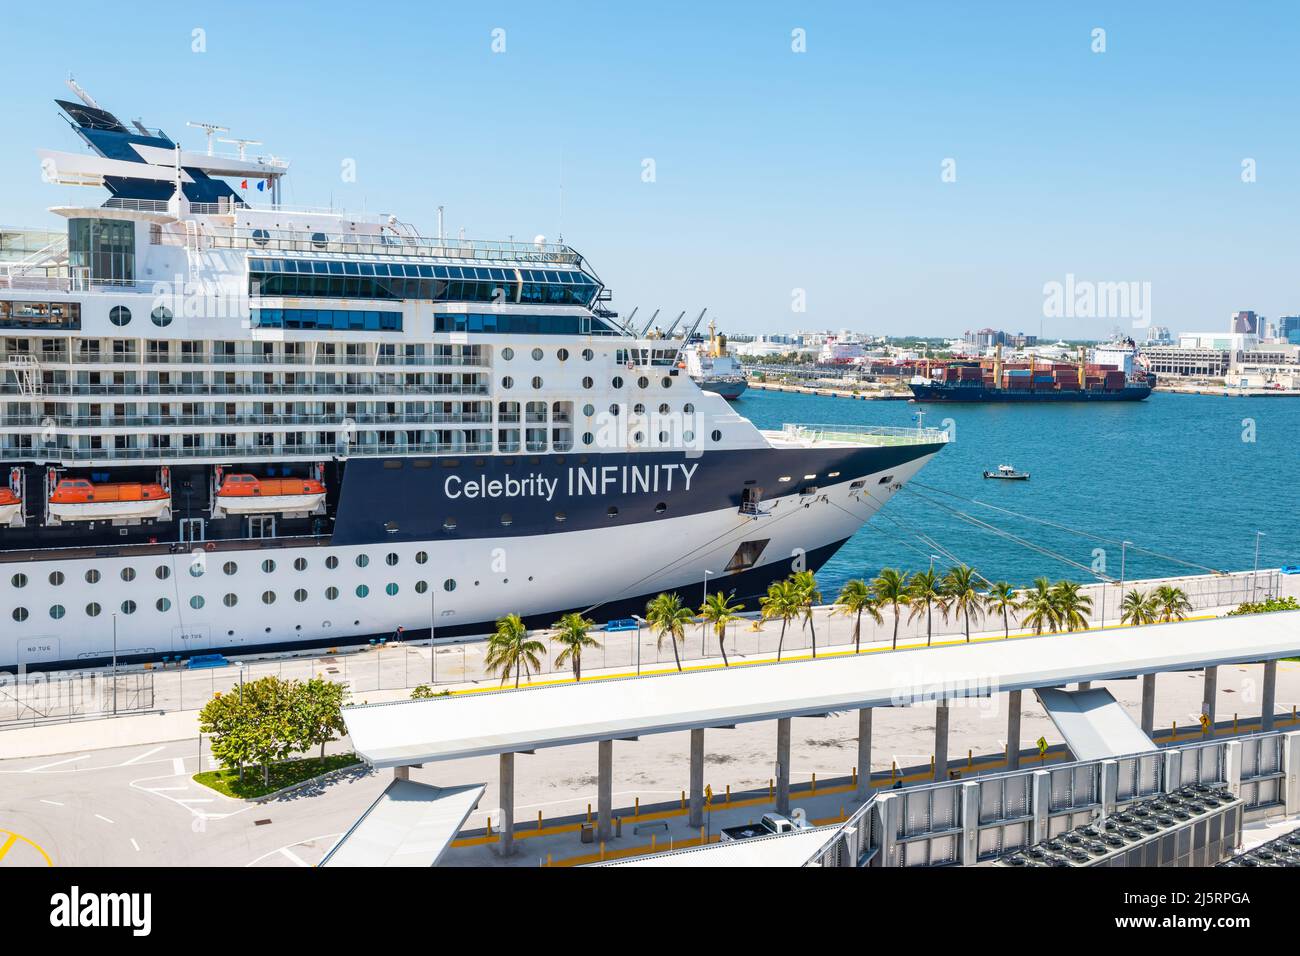 FORT LAUDERDALE, FLORIDE - le 28 MARS 2022 : bateau de croisière Celebrity Infinity (Celebrity Cruises) amarré à Port Everglades, ft Lauderdale, Floride. Banque D'Images